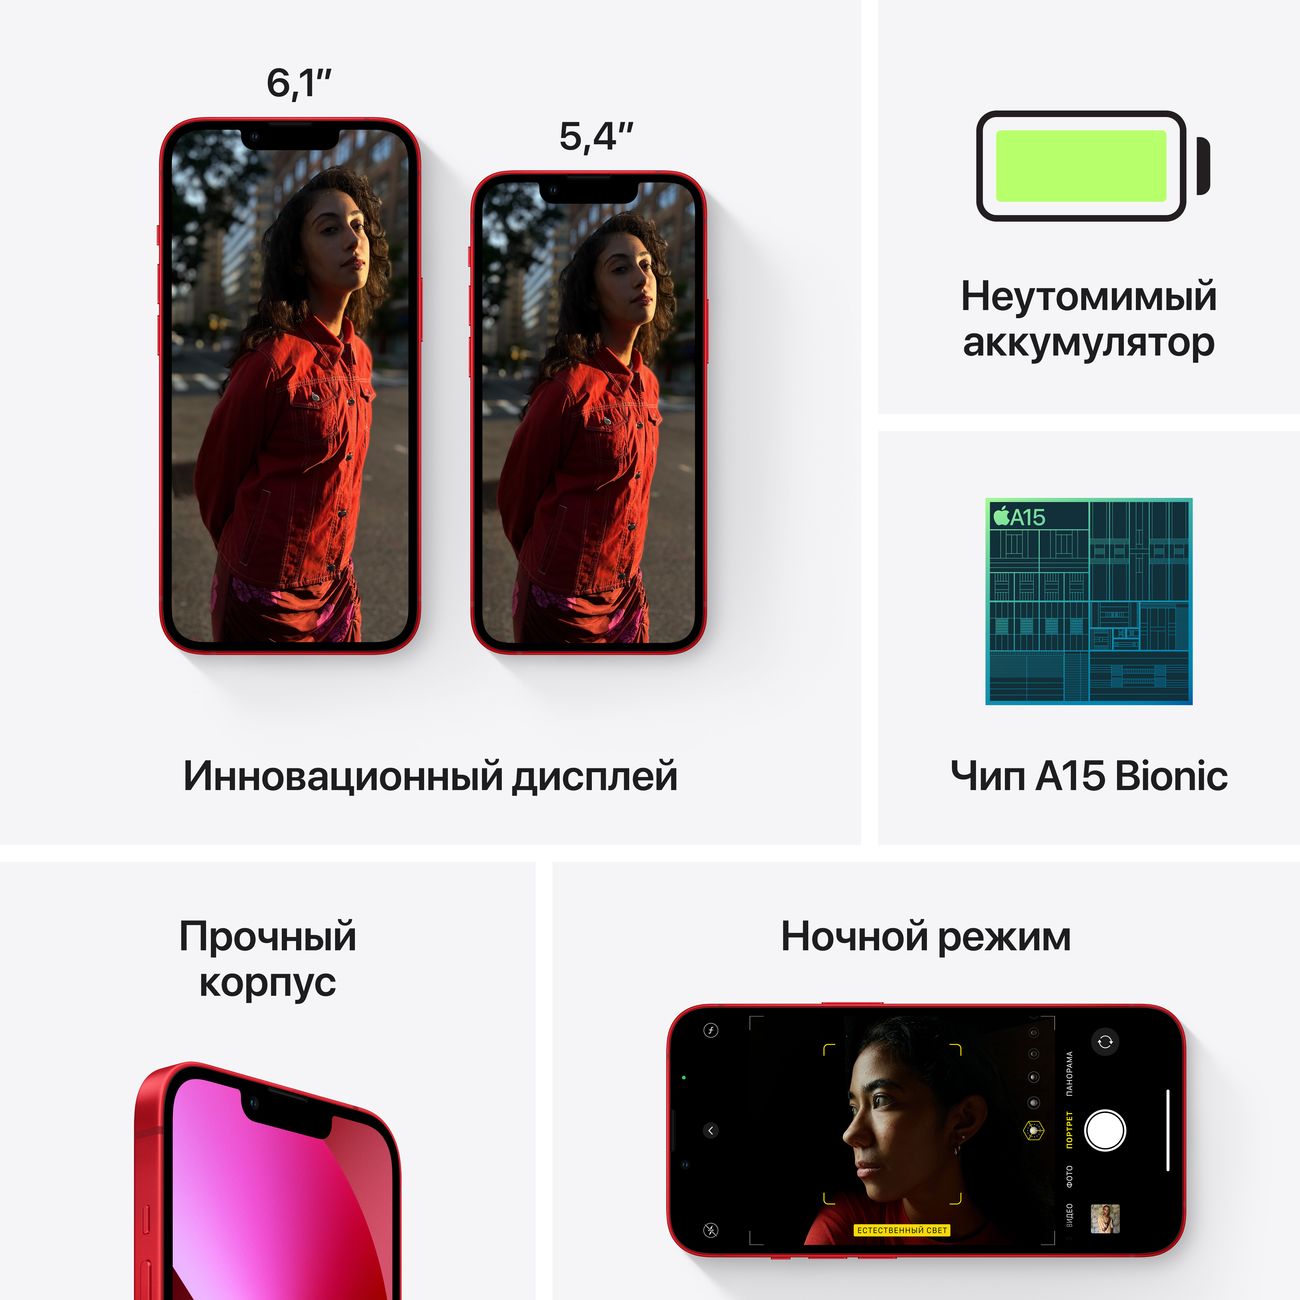 Купить смартфон apple iphone 13 128gb (product) red Apple iPhone 13 в официальном магазине Apple, Samsung, Xiaomi. iPixel.ru Купить, заказ, кредит, рассрочка, отзывы,  характеристики, цена,  фотографии, в подарок.